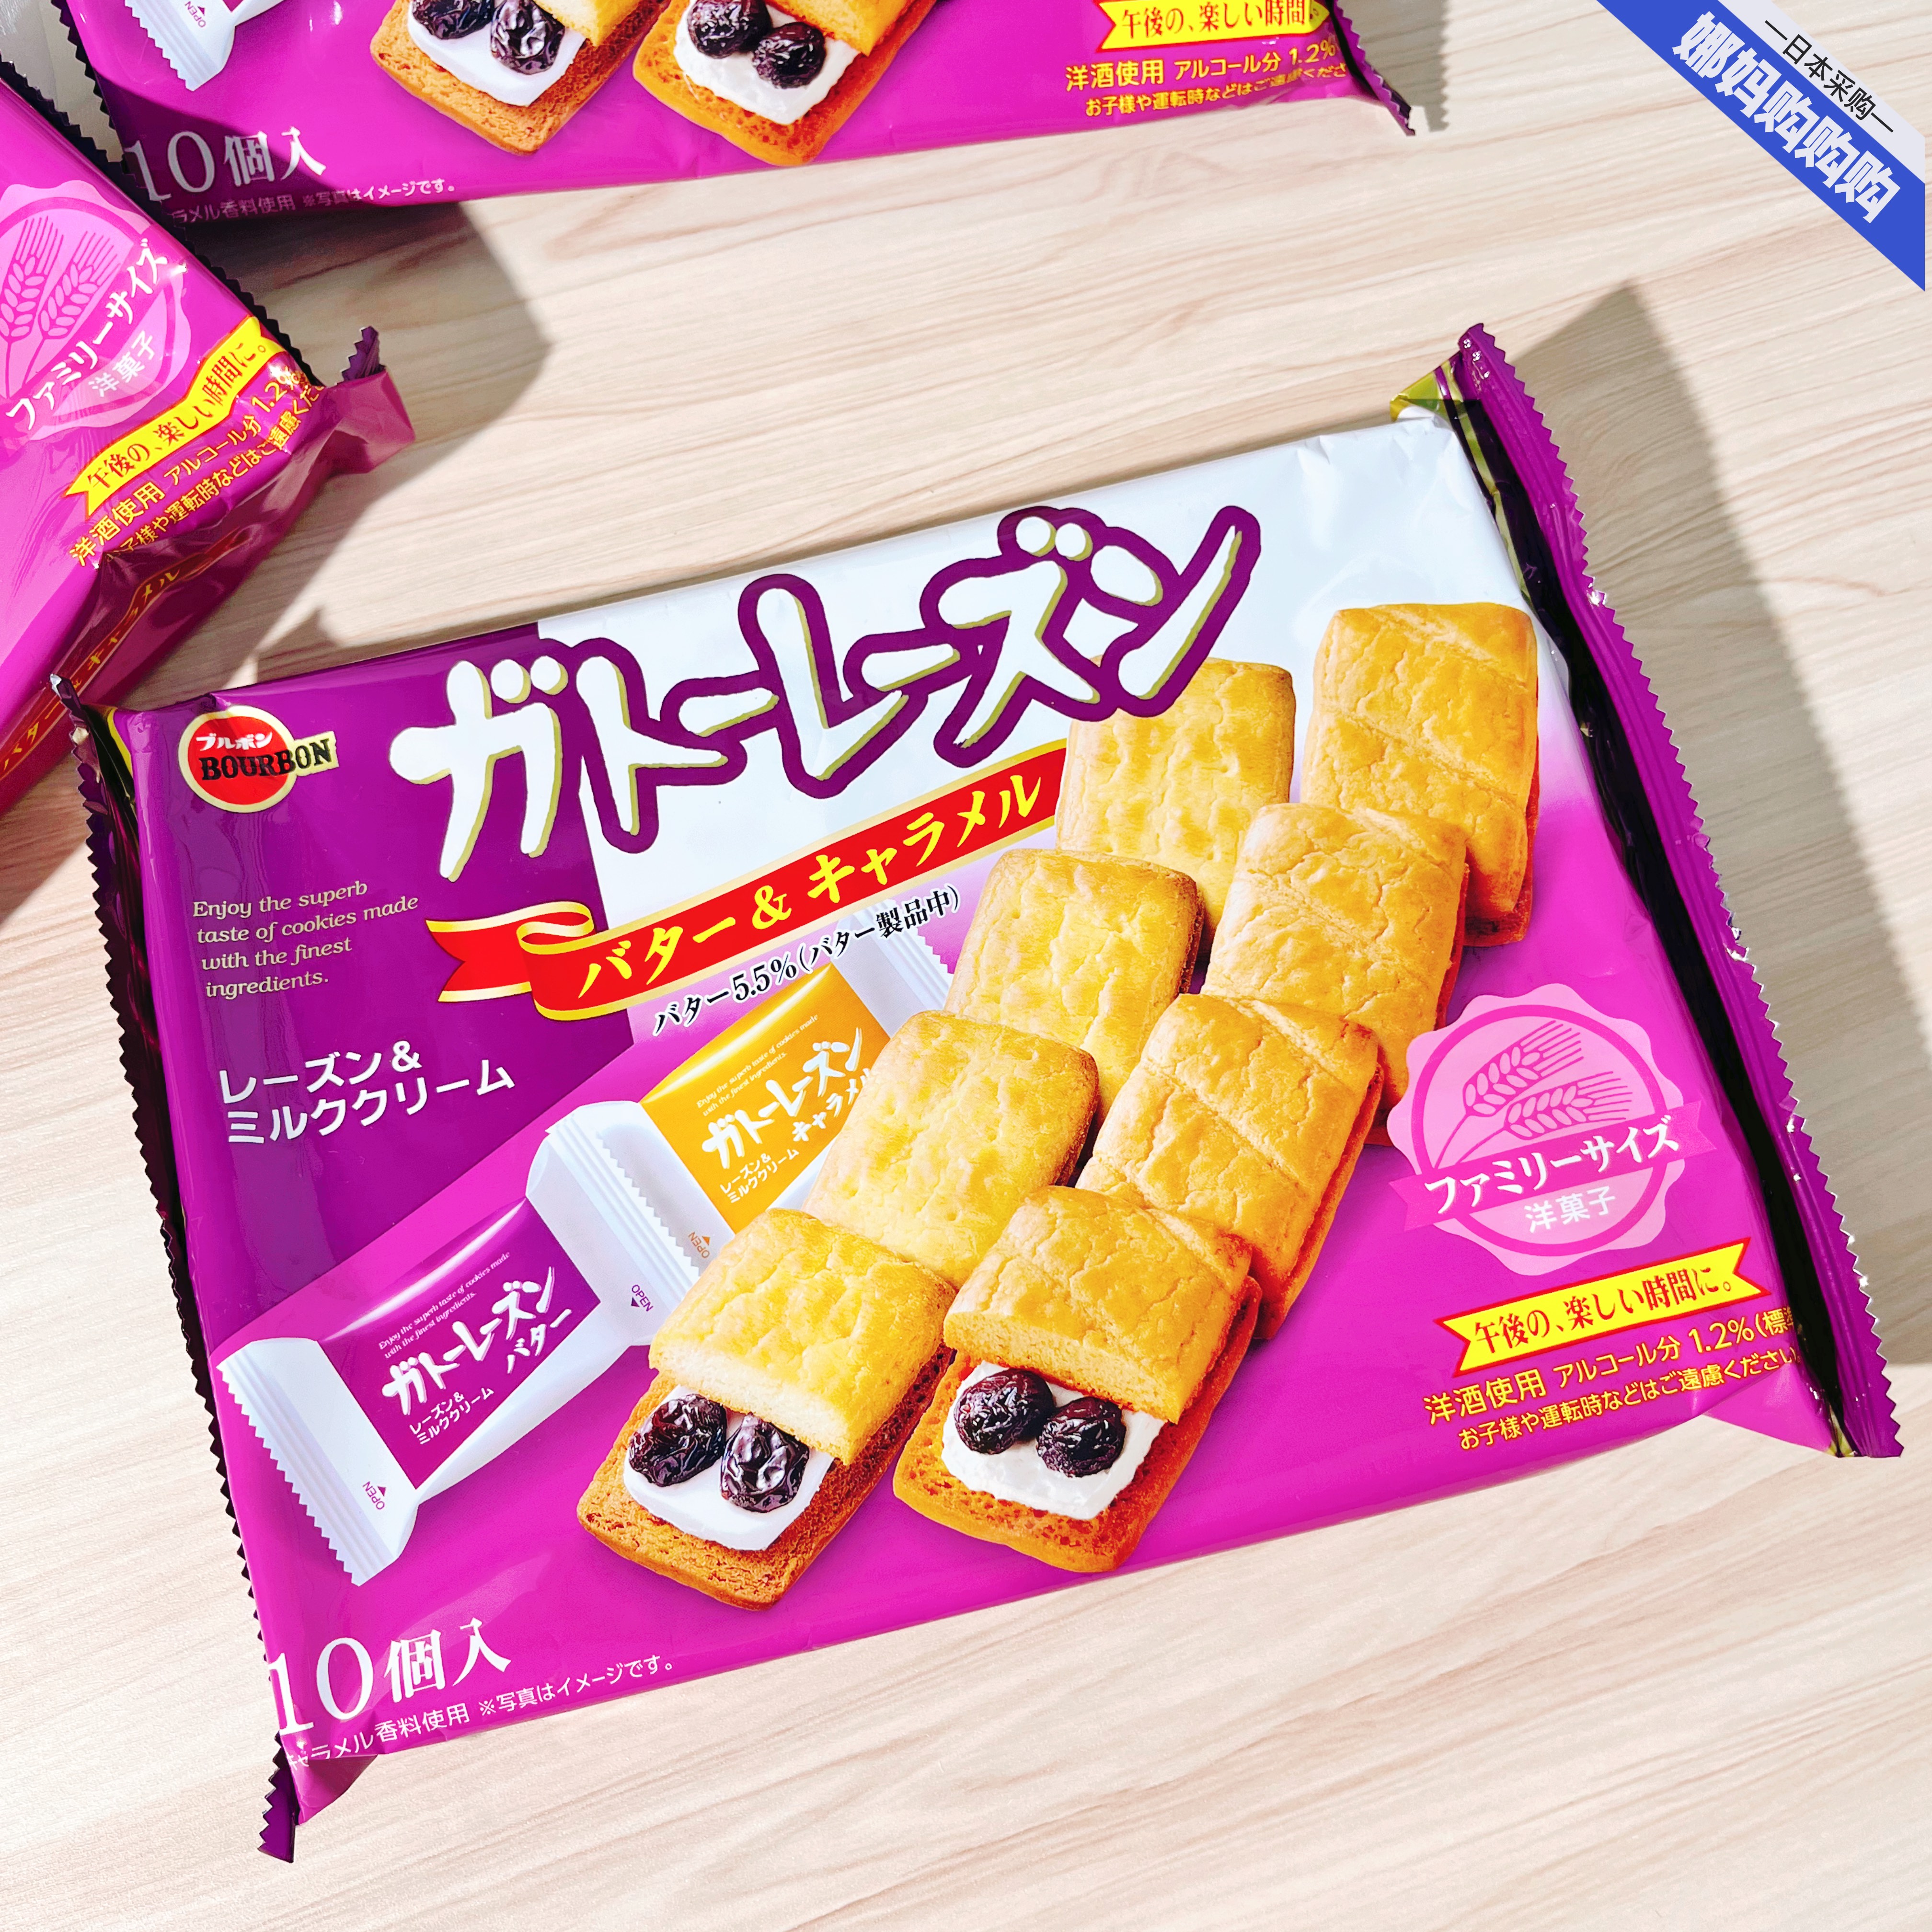 推荐日本布尔本提子夹心饼干葡萄干朗姆酒黄油&焦糖双拼大袋 170g